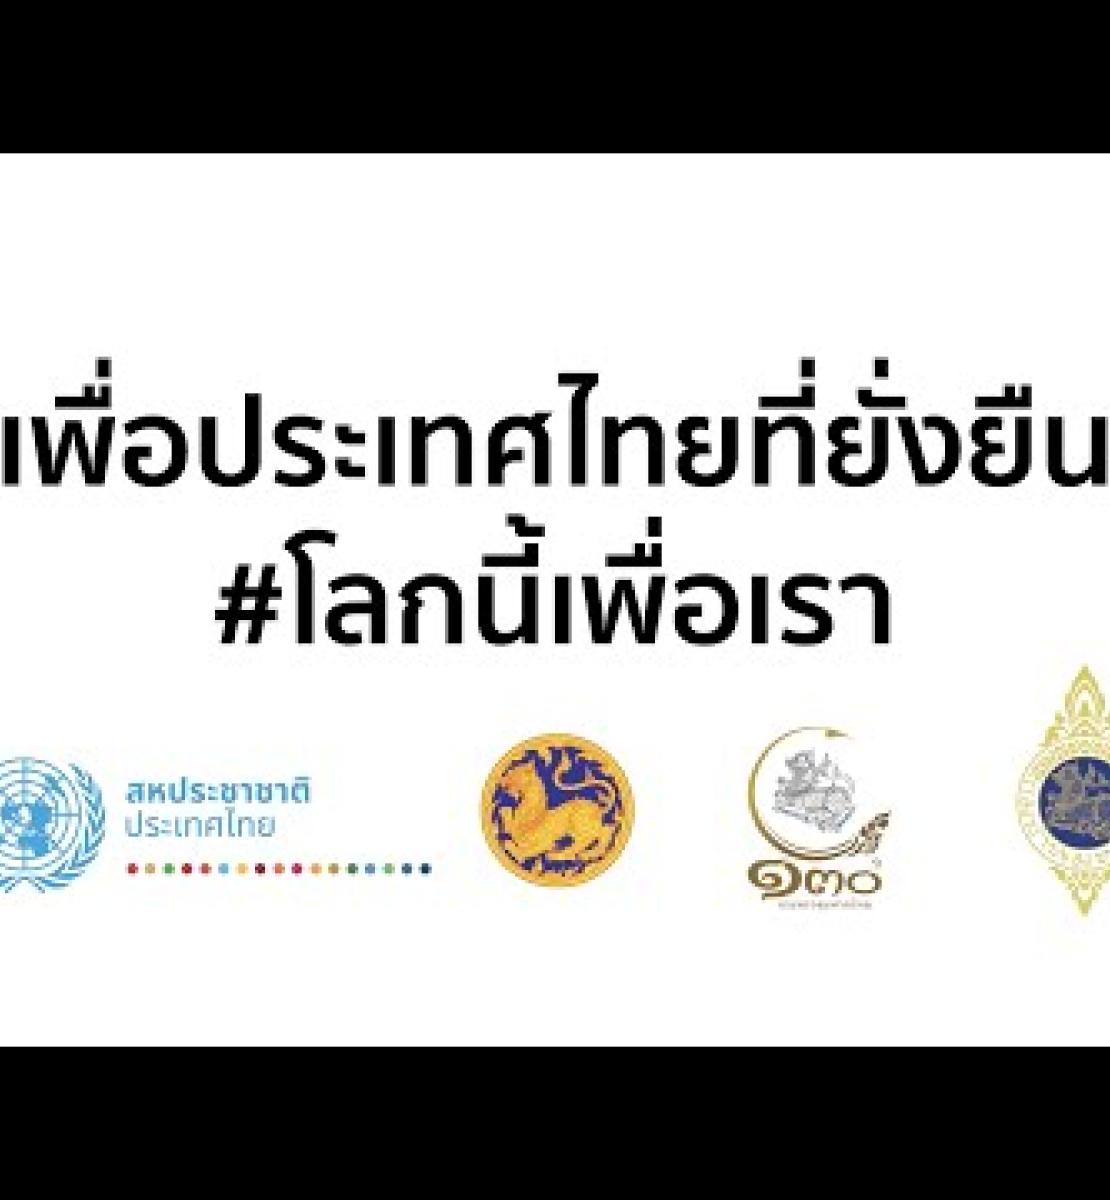 في خطوة تاريخية: حكام محافظات تايلاند الـ76 يوقّعون على ميثاق بشأن أهداف التنمية المستدامة مع التركيز على العمل المناخي